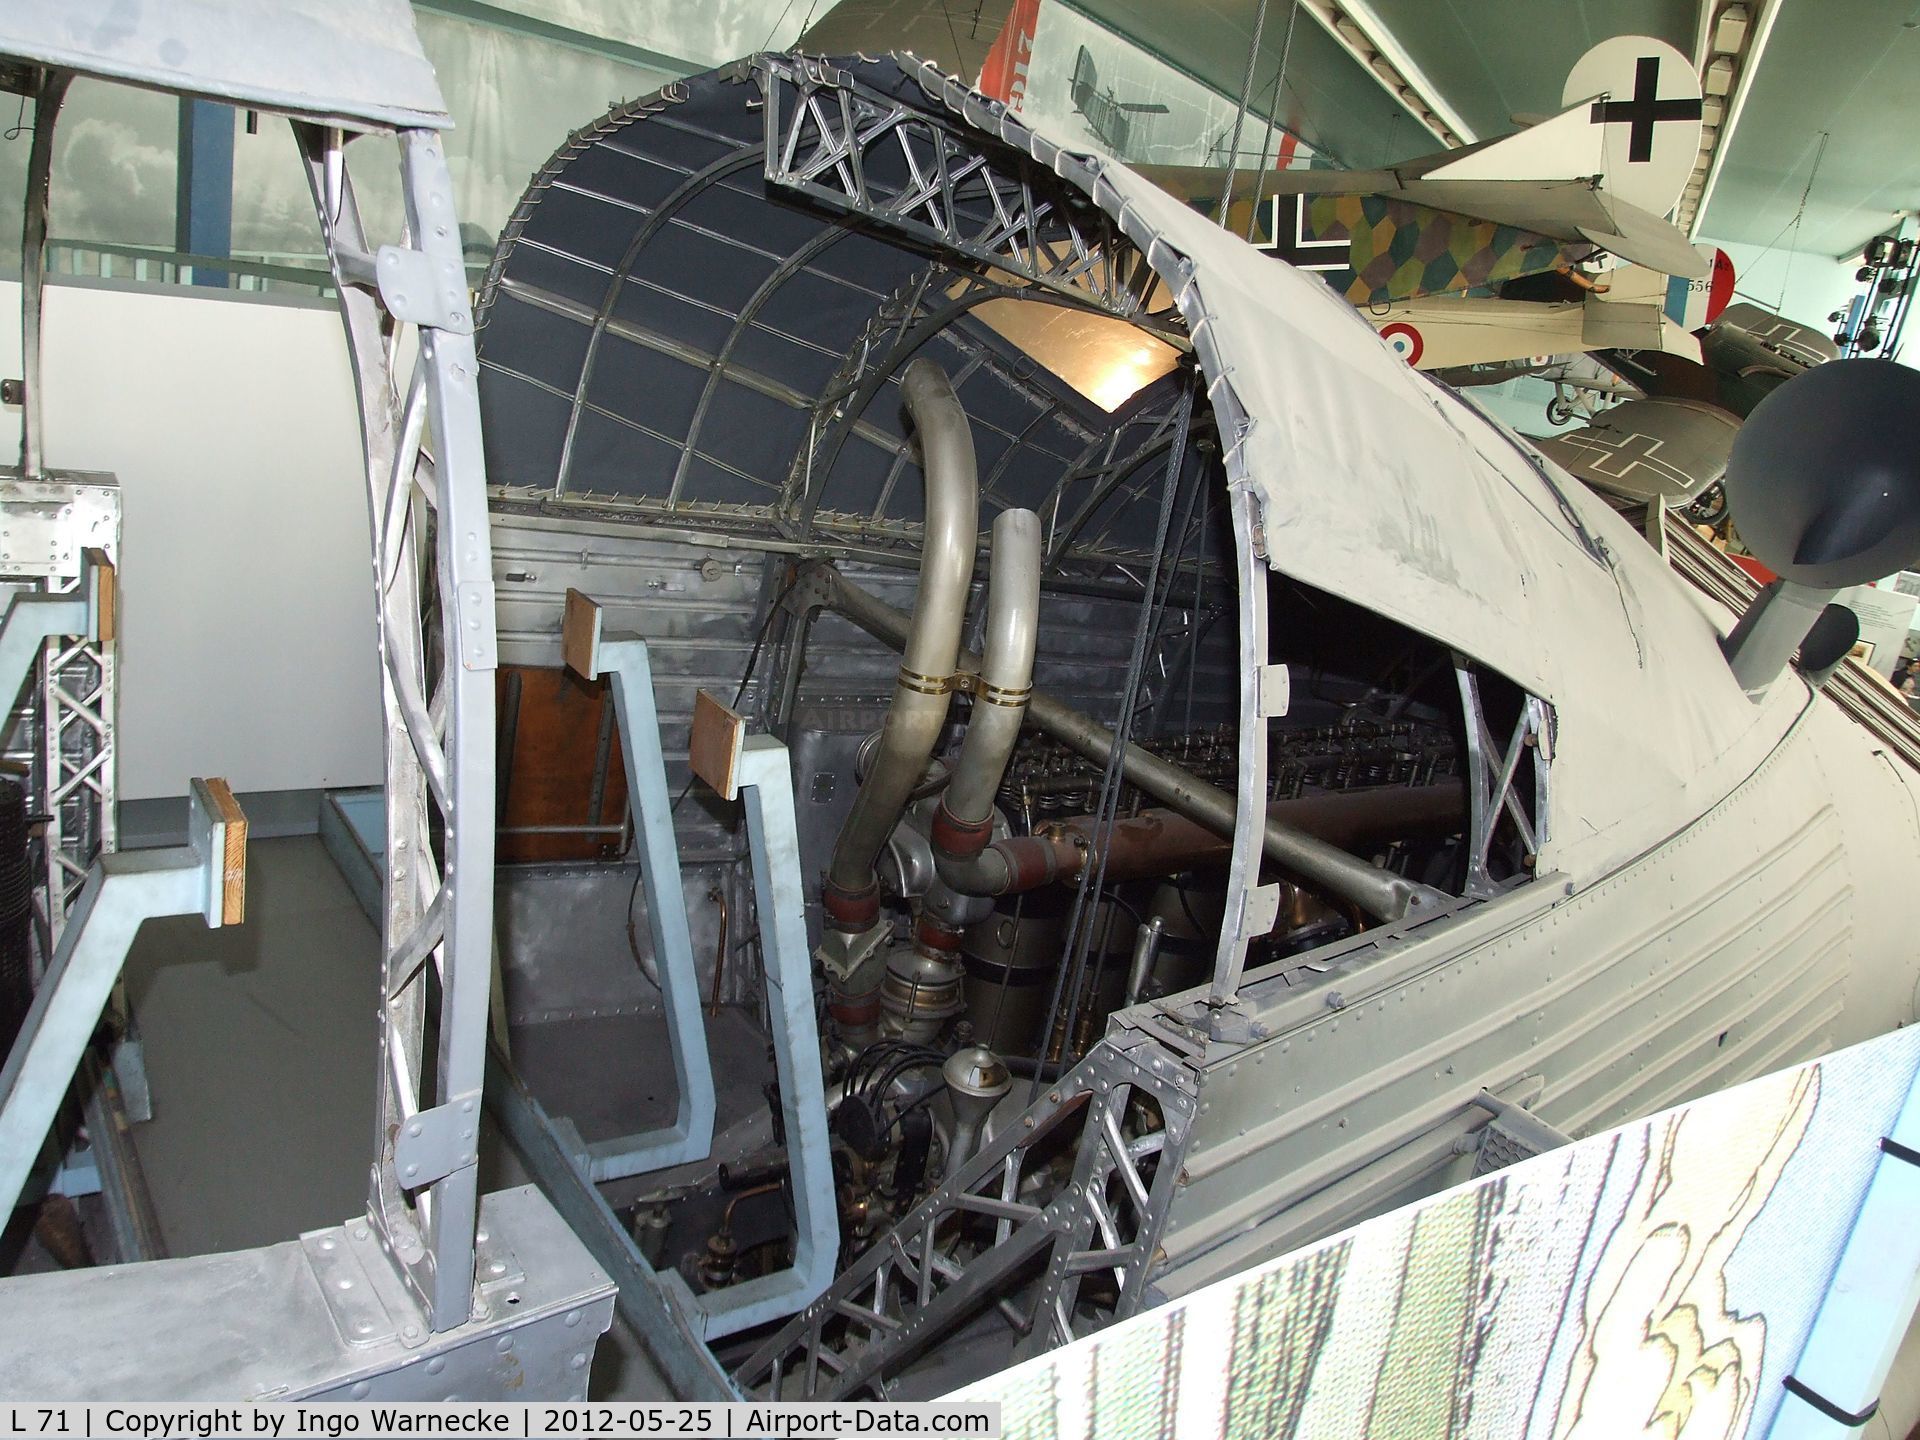 L 71, 1918 Zeppelin LZ 113 C/N LZ 113, Zeppelin LZ 113 (aft nacelle only) at the Musee de l'Air, Paris/Le Bourget  #i